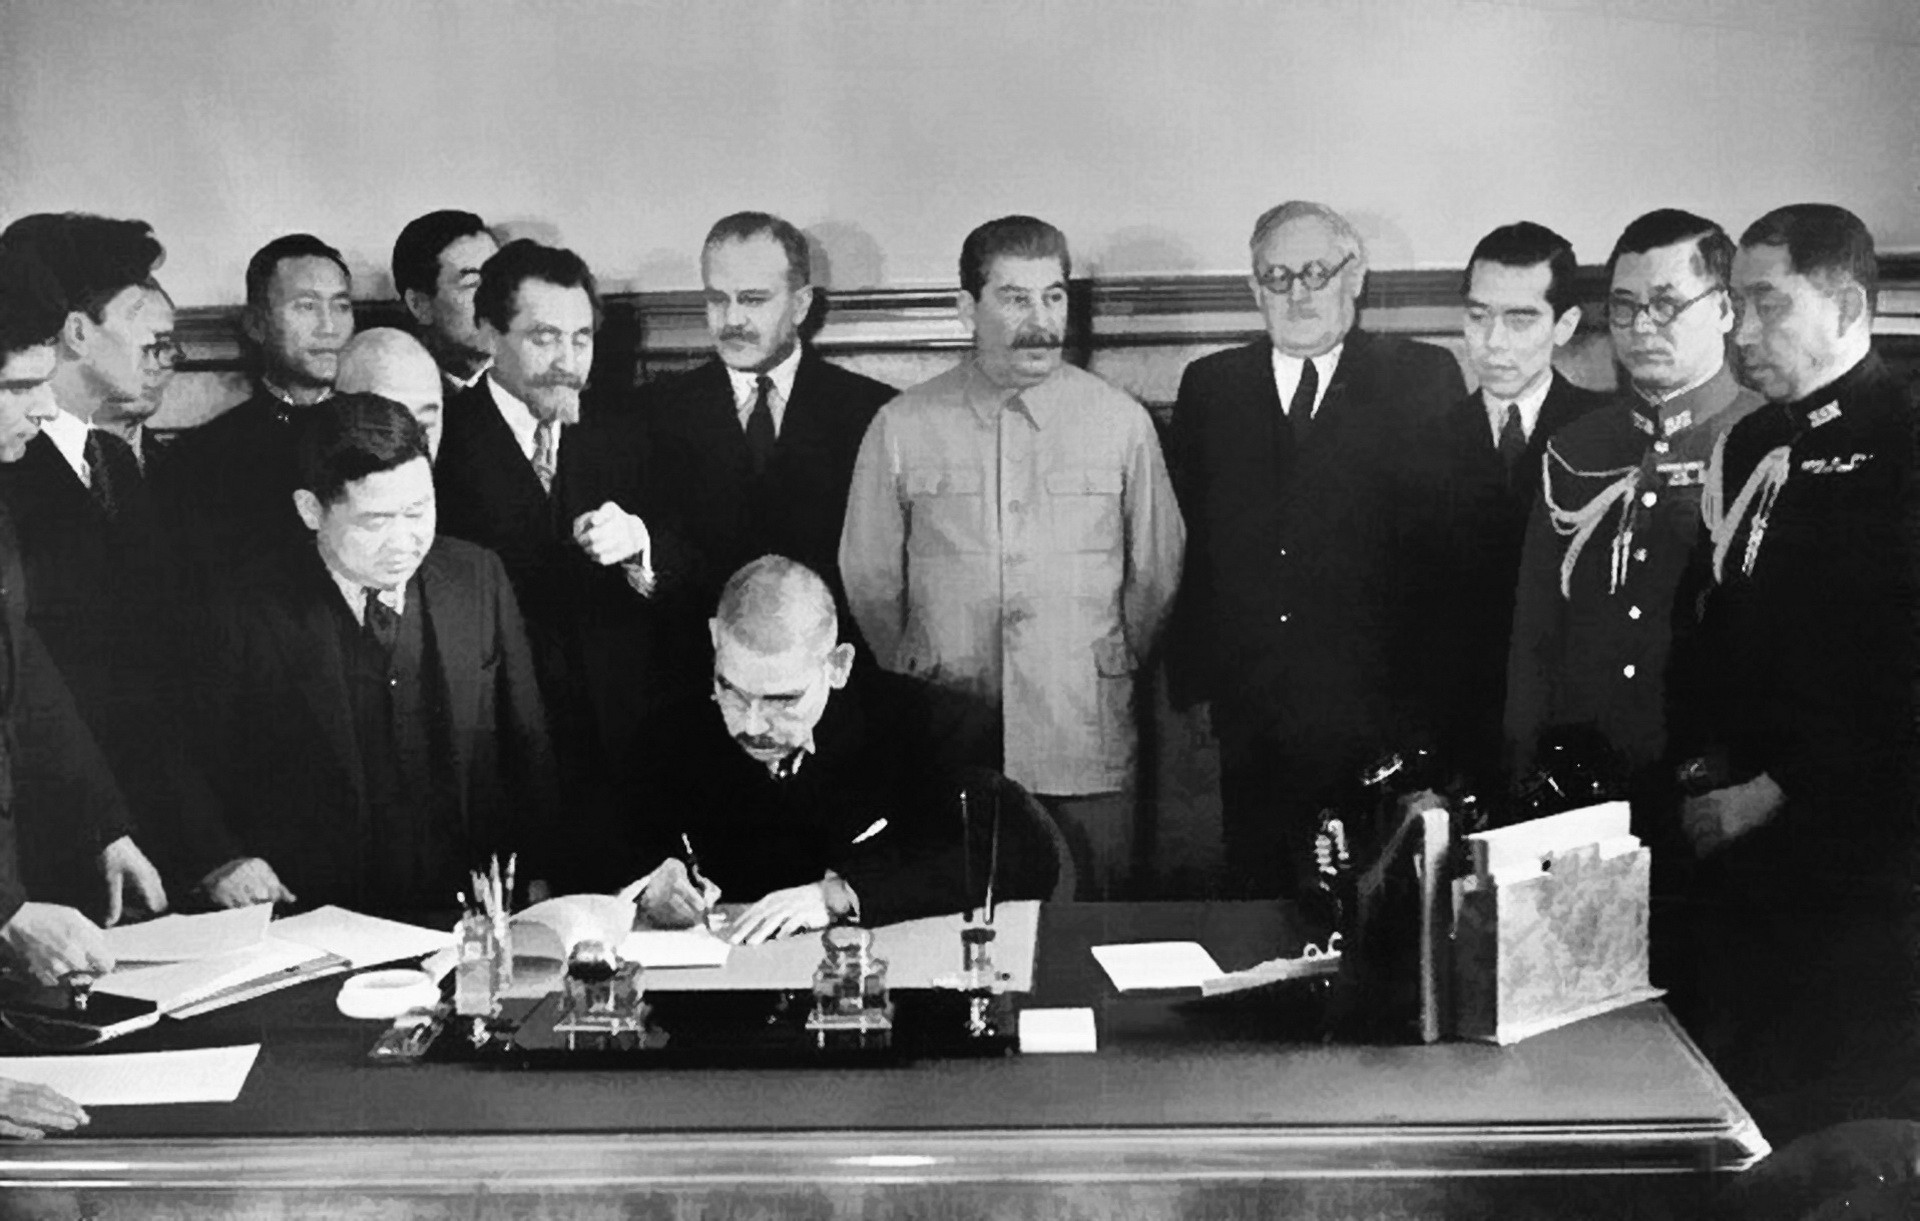 Зов Мира... На другой фотографии те же лица, только за столом сидит Мацуока. Он старательно выписывает иероглифы под советско-японским пактом о нейтралитете.